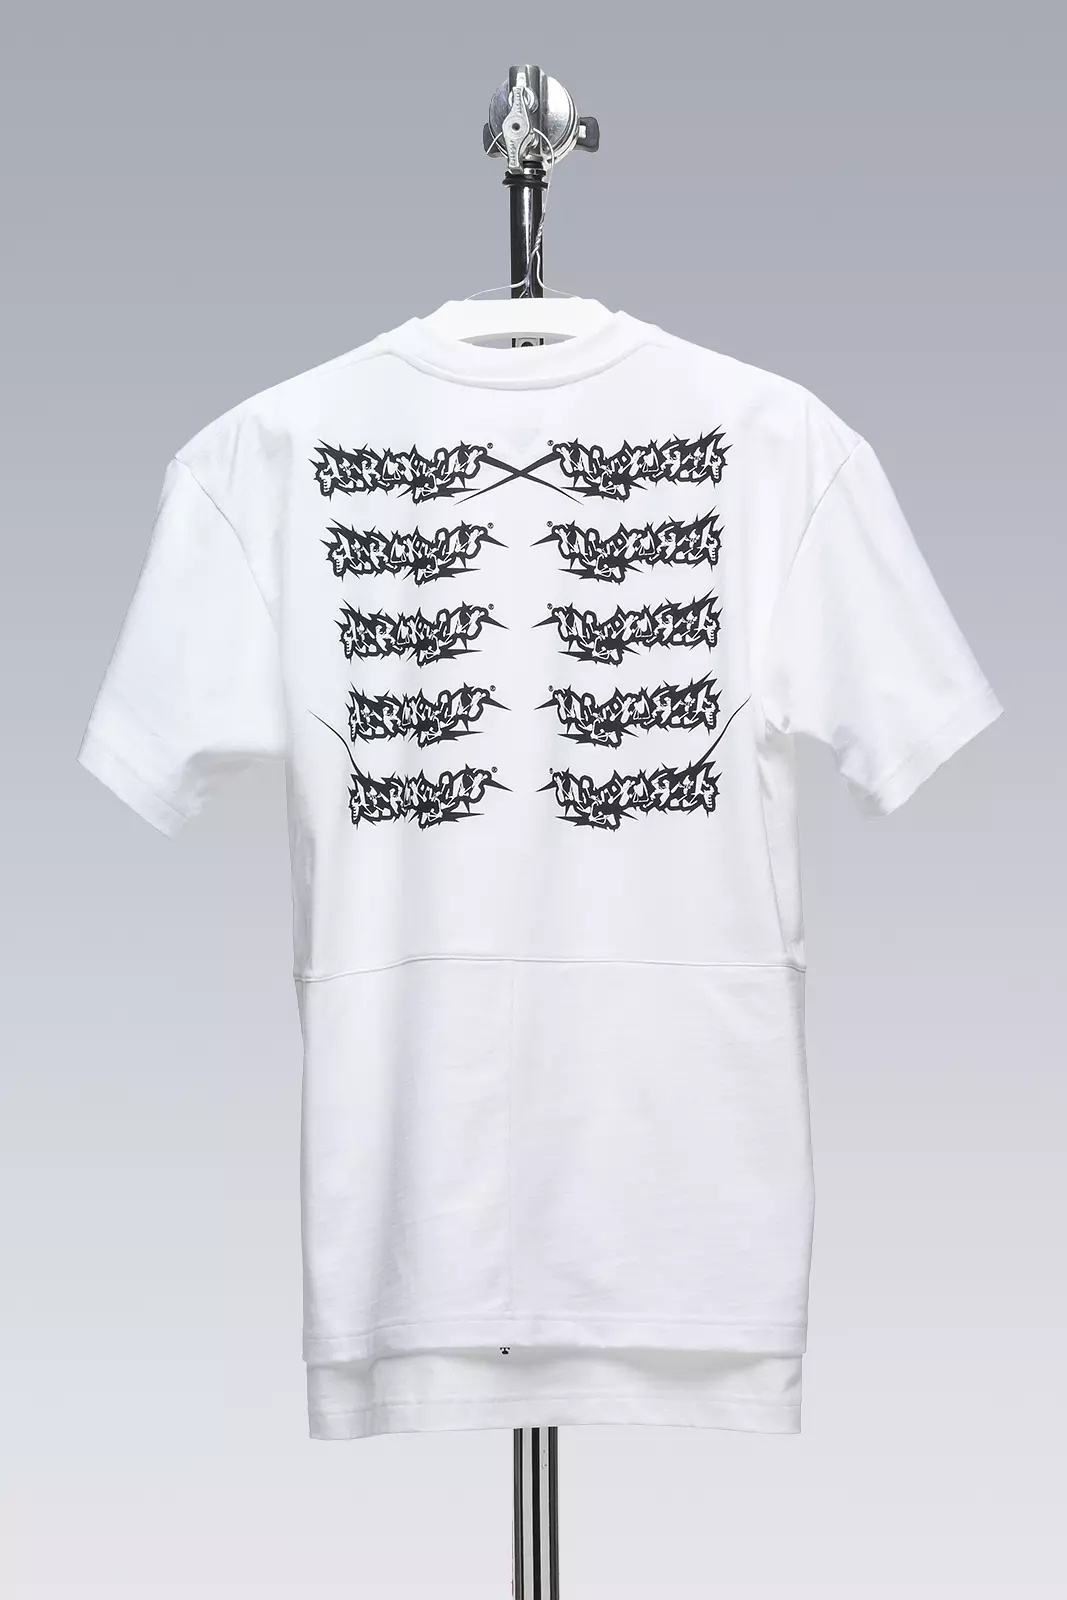 S28-PR-A 100% Orgnaic Cotton Short Sleeve T-shirt White - 2